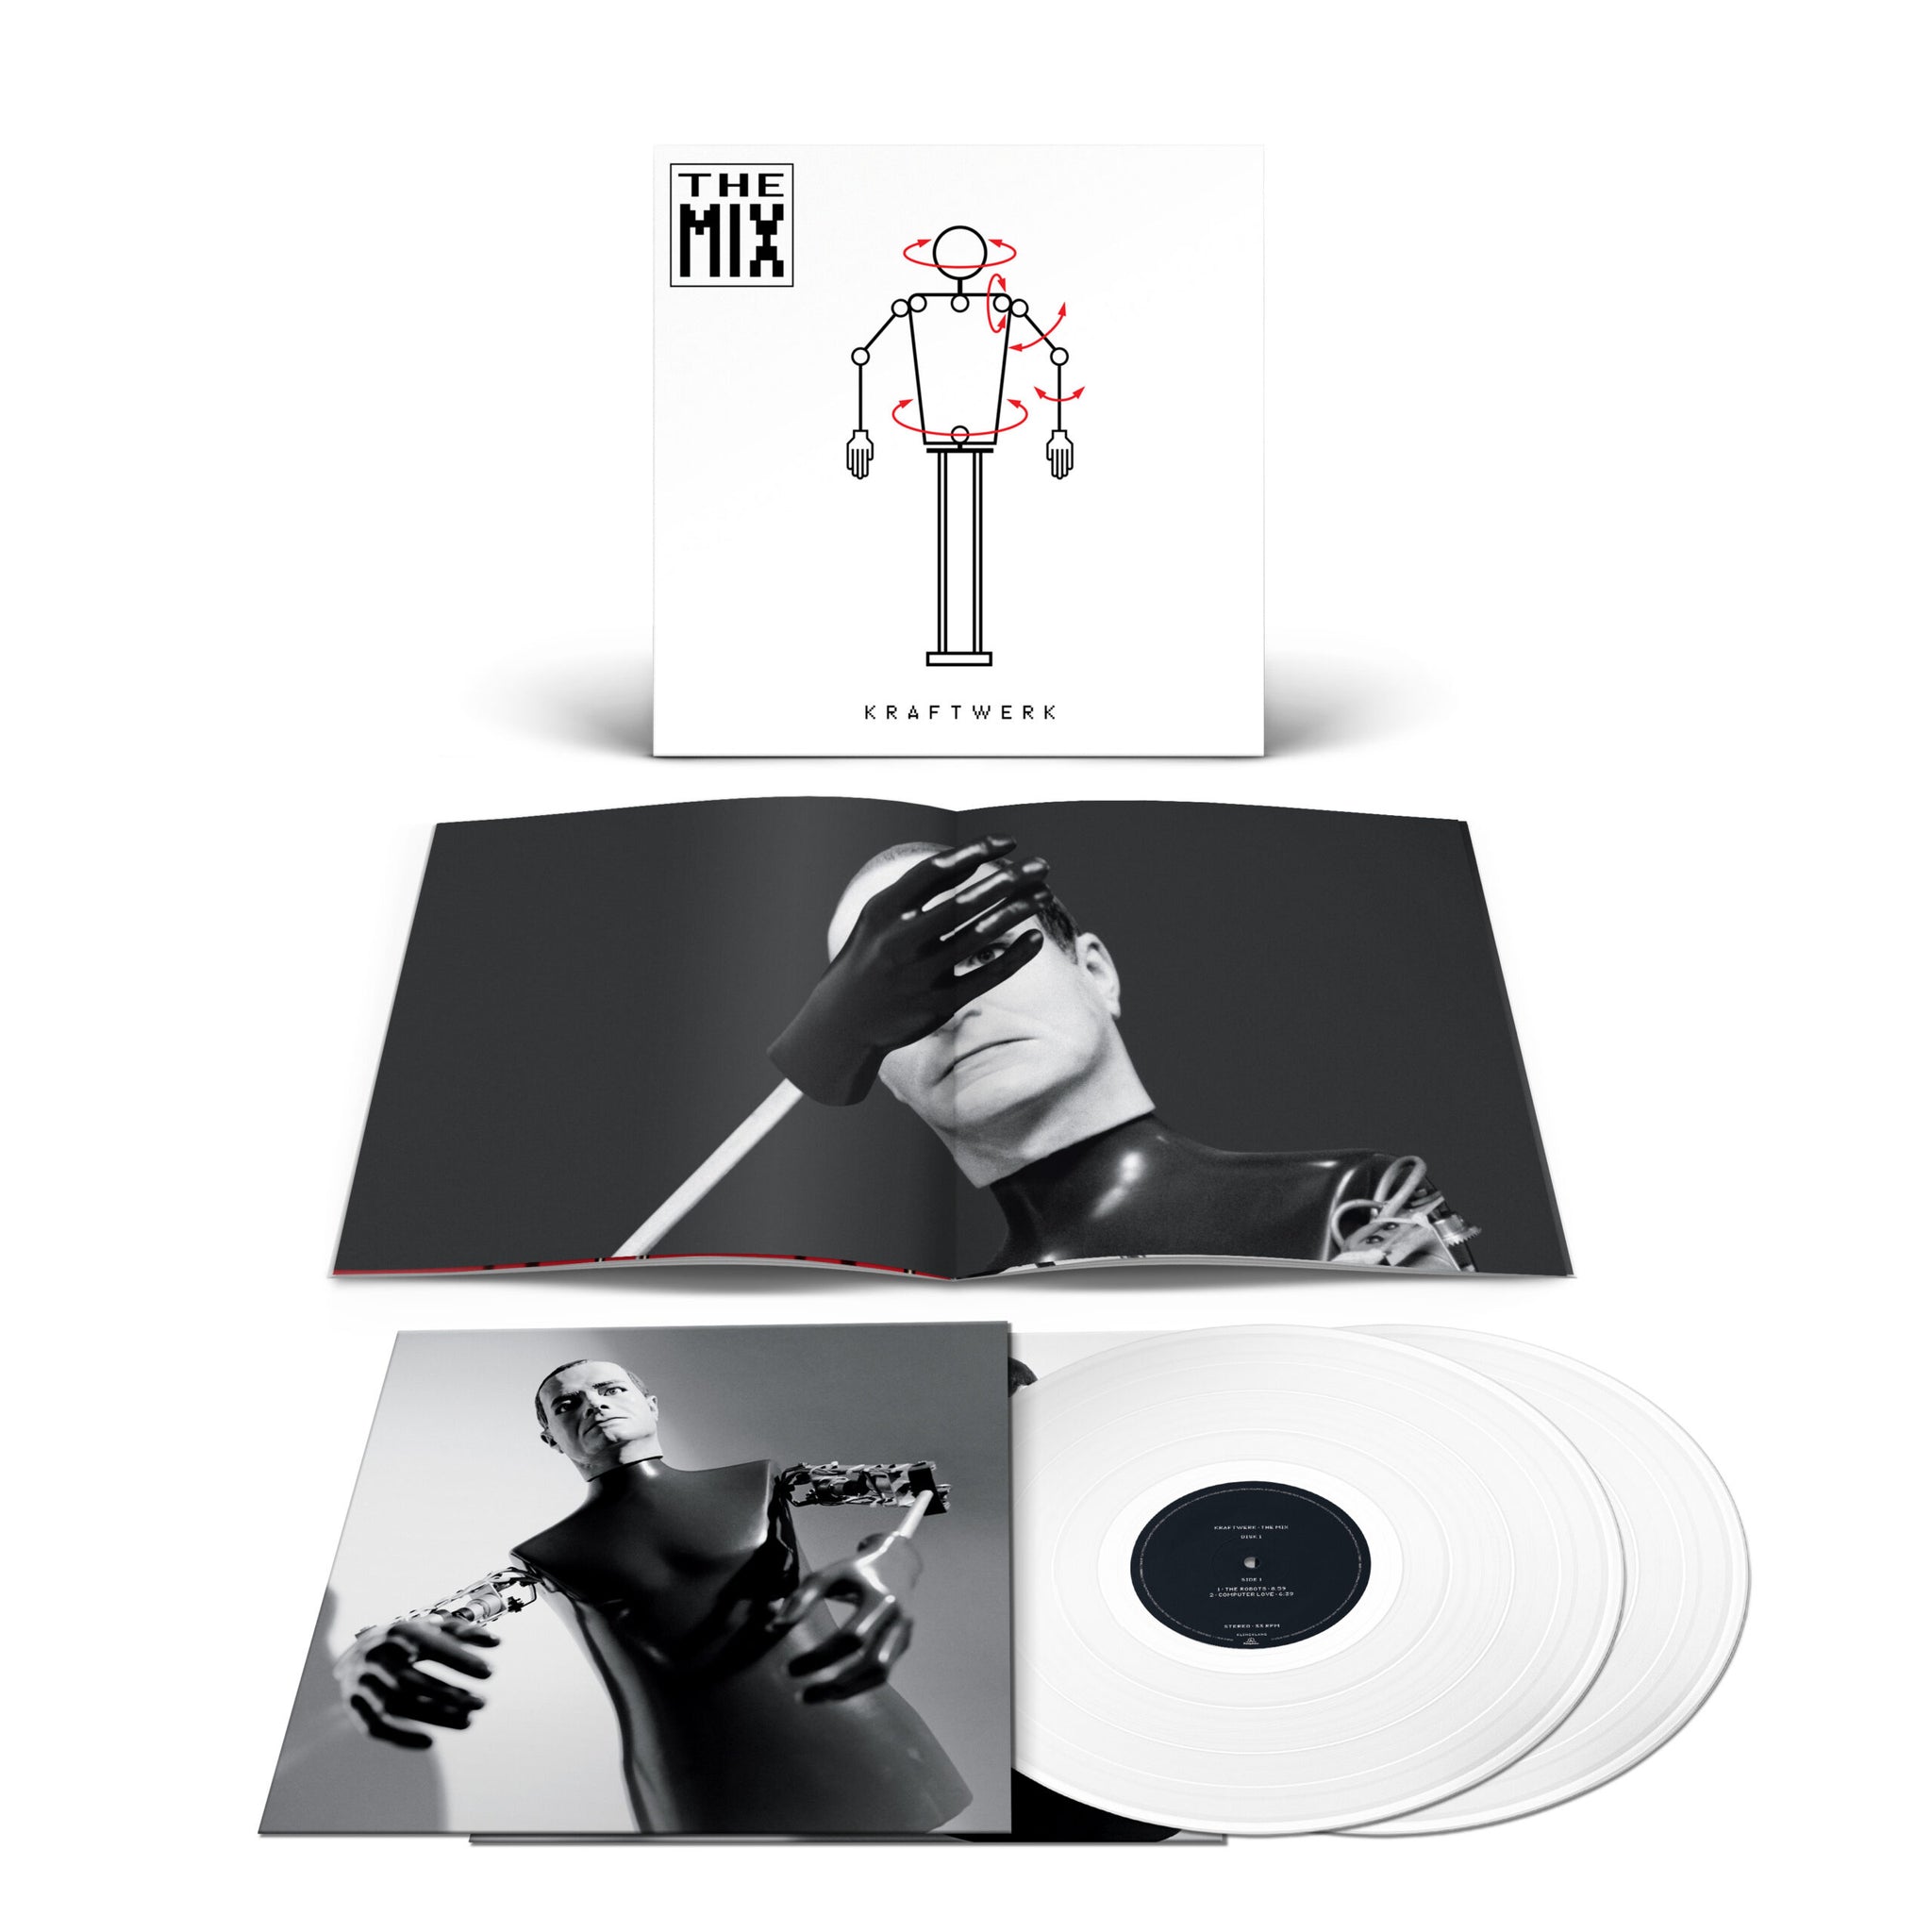 KRAFTWERK – The Mix – 2LP – Limited White Vinyl